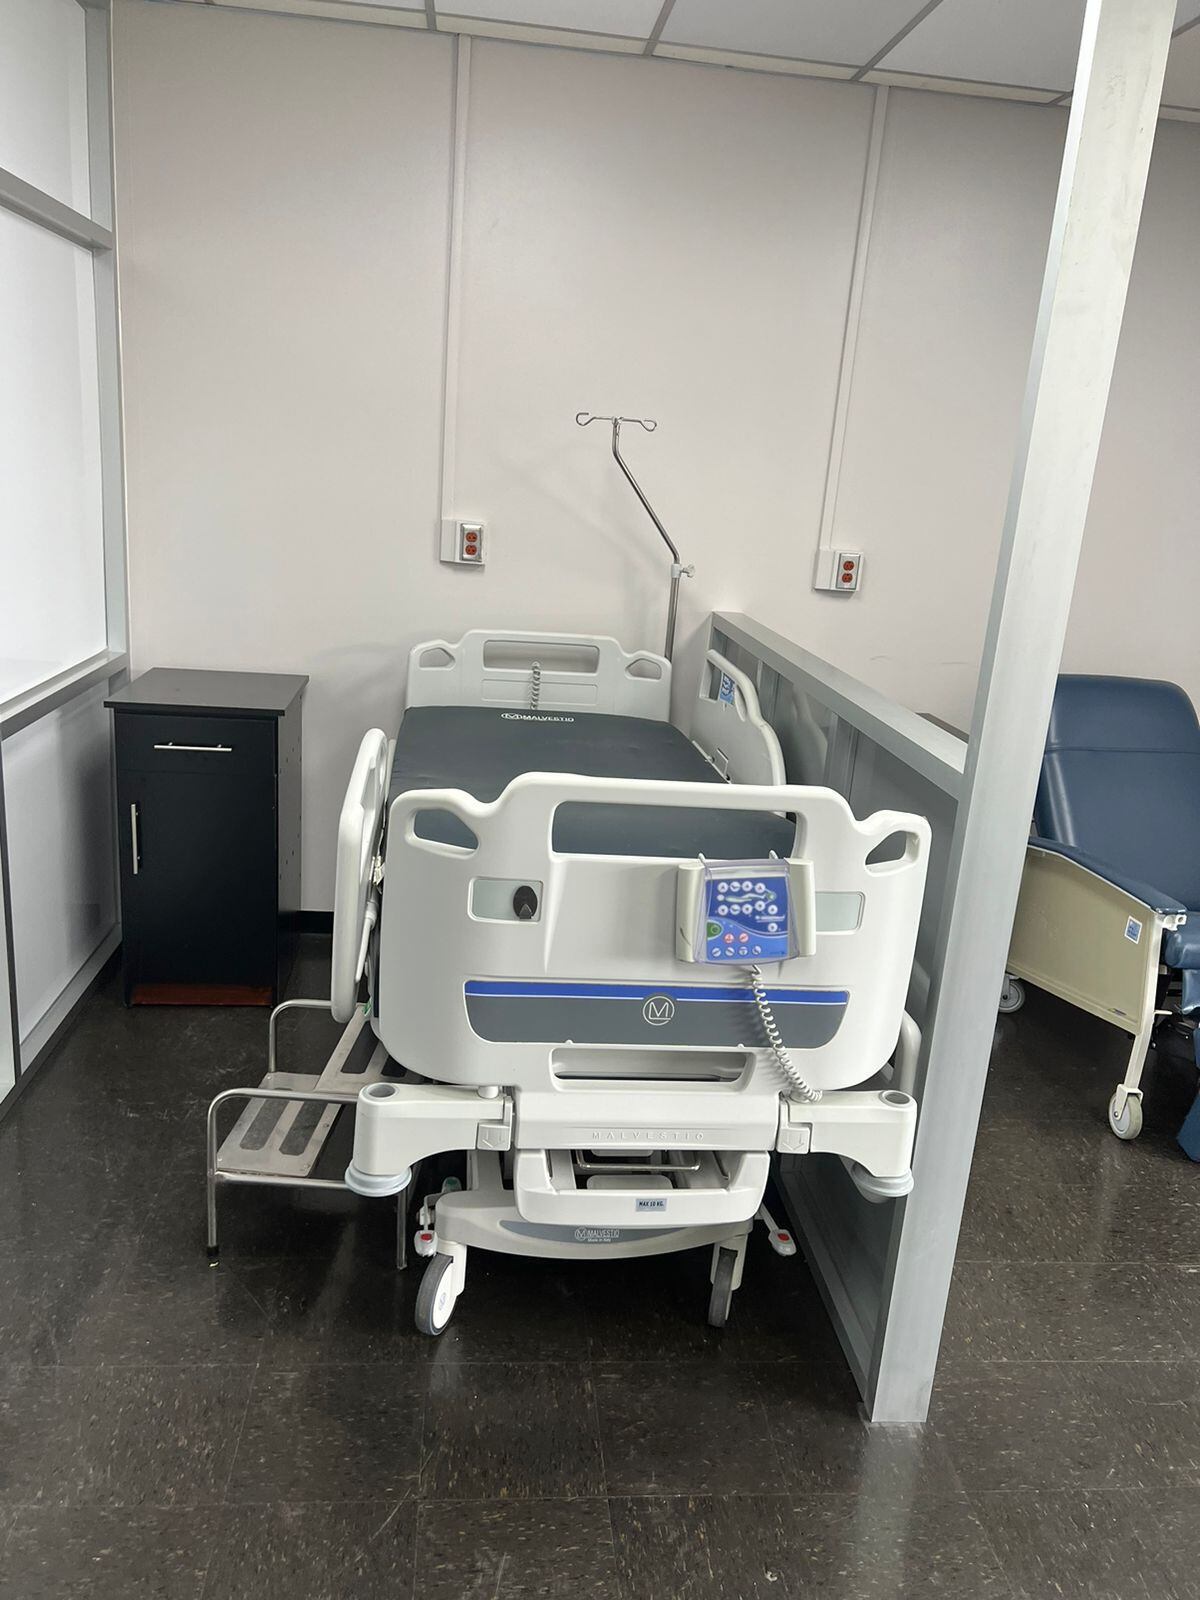 Esta es una de las camas que se tienen acondicionadas para los pacientes oncológicos que recibirán quimioterapia en el Hospital San Carlos. Fotografía: Cortesía